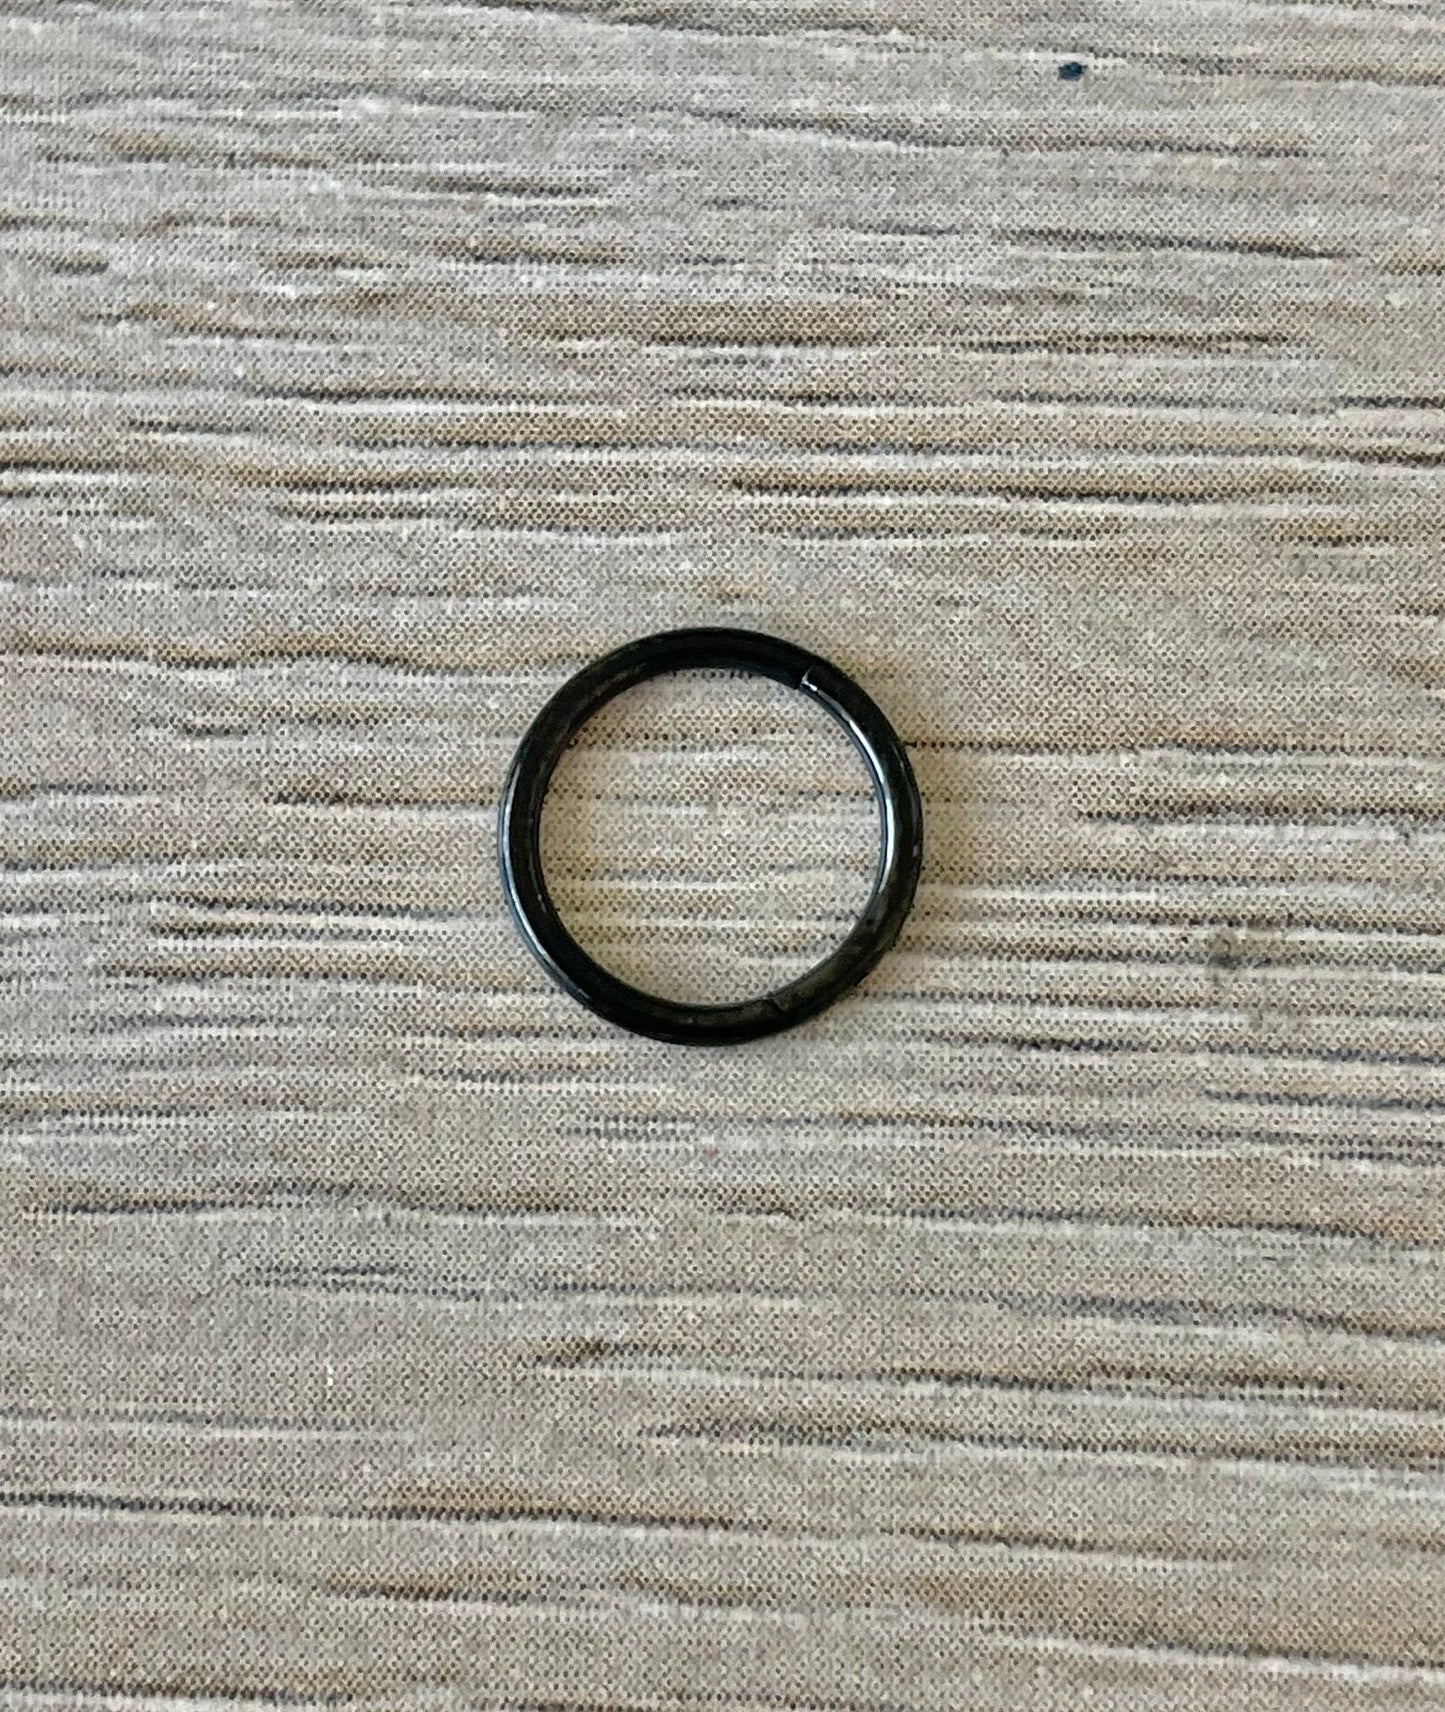 Titanium Septum Ring (14G, 16G, 18G, 20G) (6mm, 7mm, 8mm, 9mm, 10mm, 11mm, 12mm, 14mm, 16mm Inner Diameter)